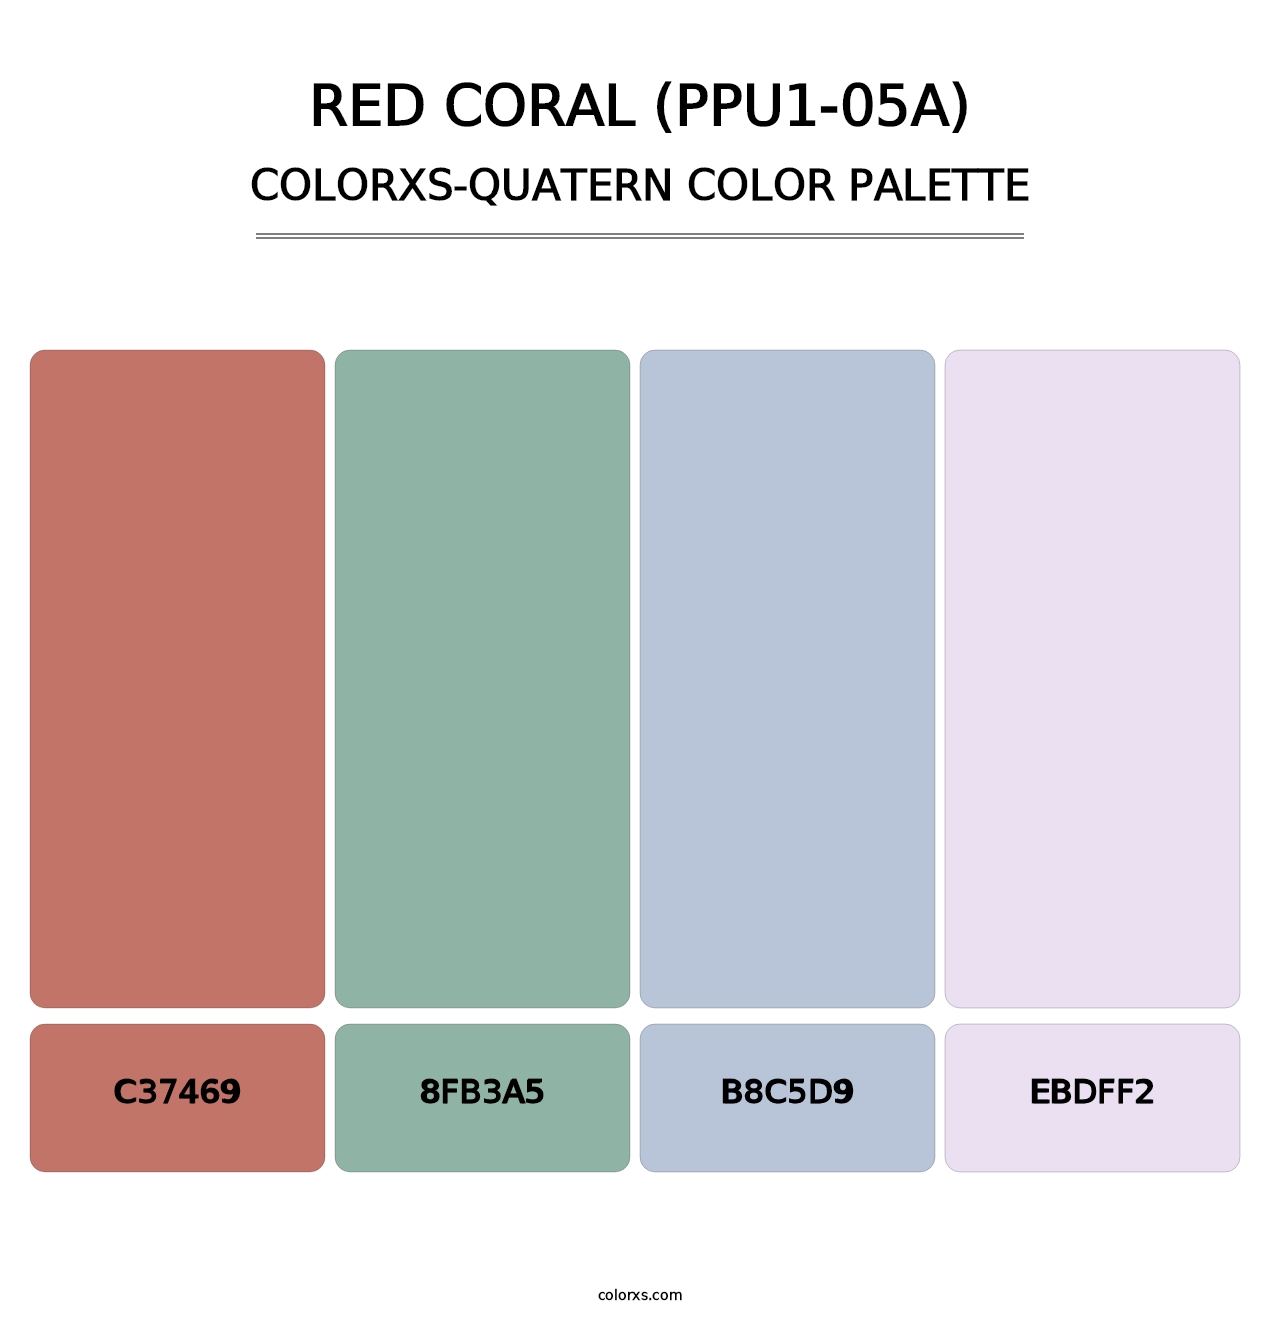 Red Coral (PPU1-05A) - Colorxs Quatern Palette